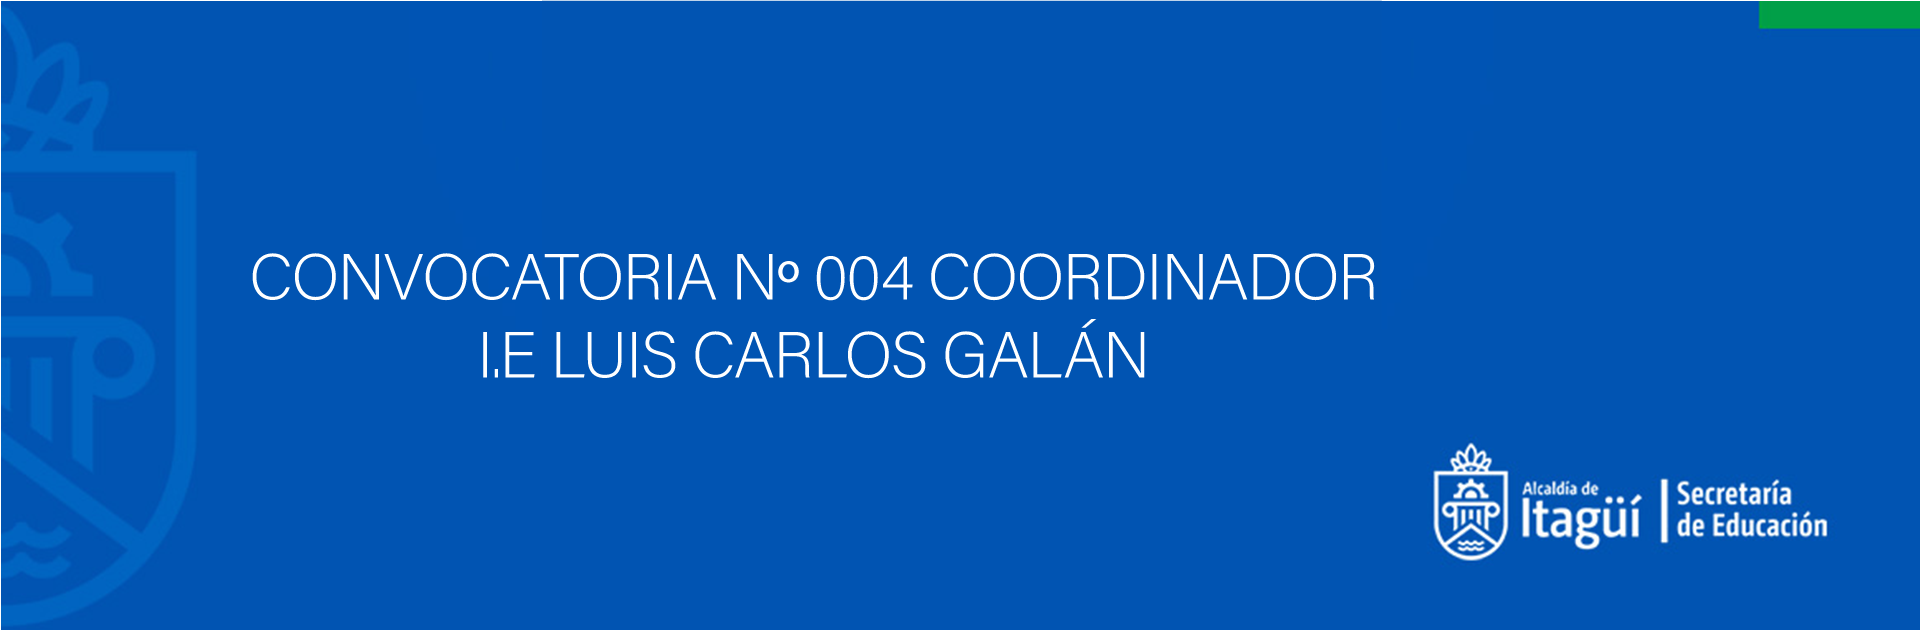 CONVOCATORIA N 004 COORDINADOR I.E LUIS CARLOS GALÁN